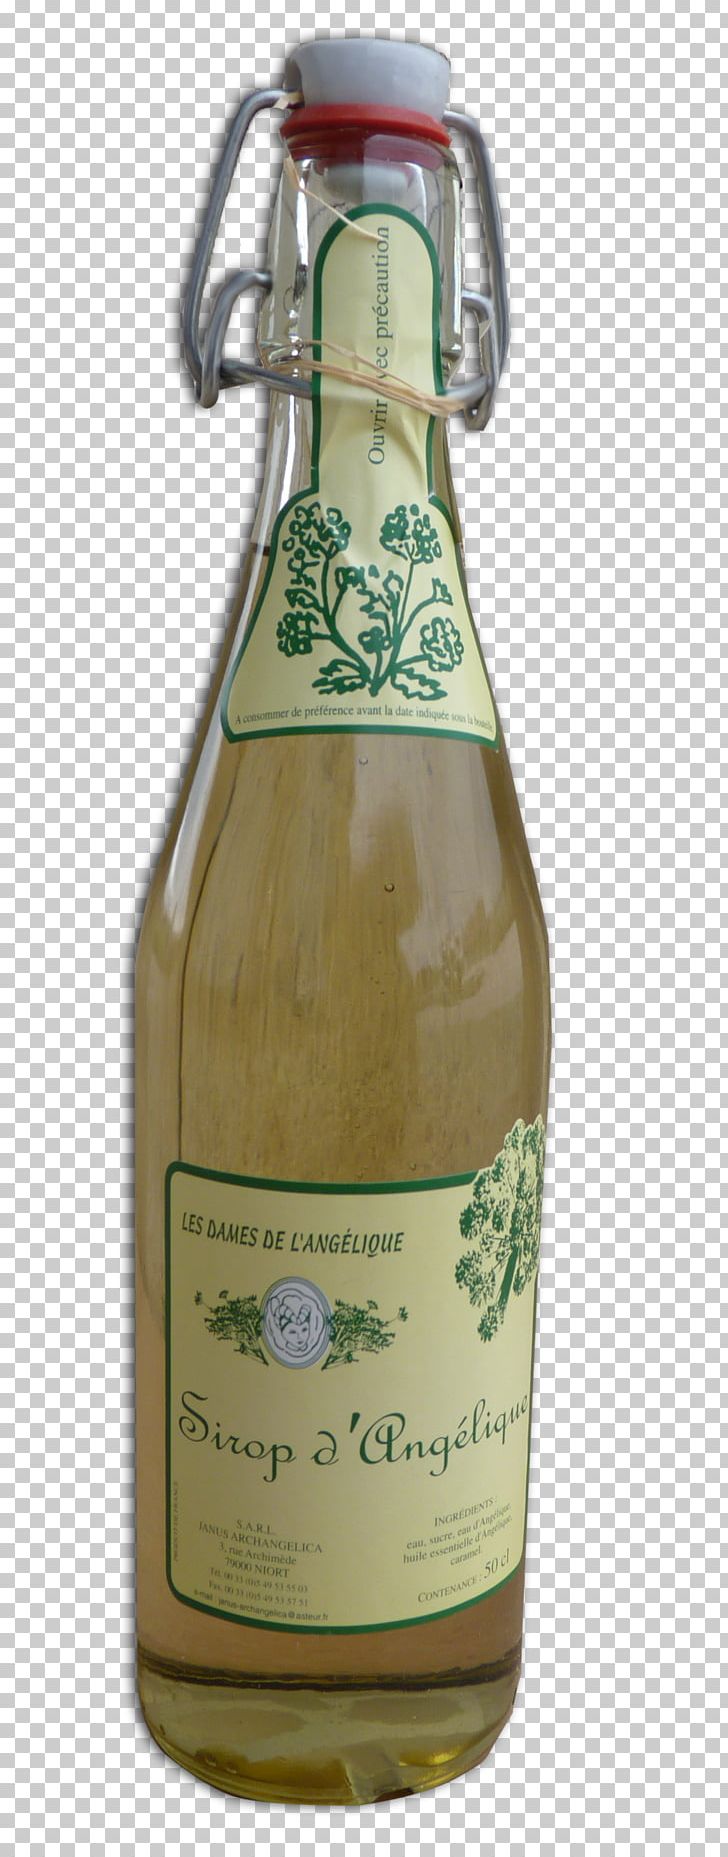 Liqueur Beer Bottle Glass Bottle PNG, Clipart, Beer, Beer Bottle, Bottle, Drink, Food Drinks Free PNG Download